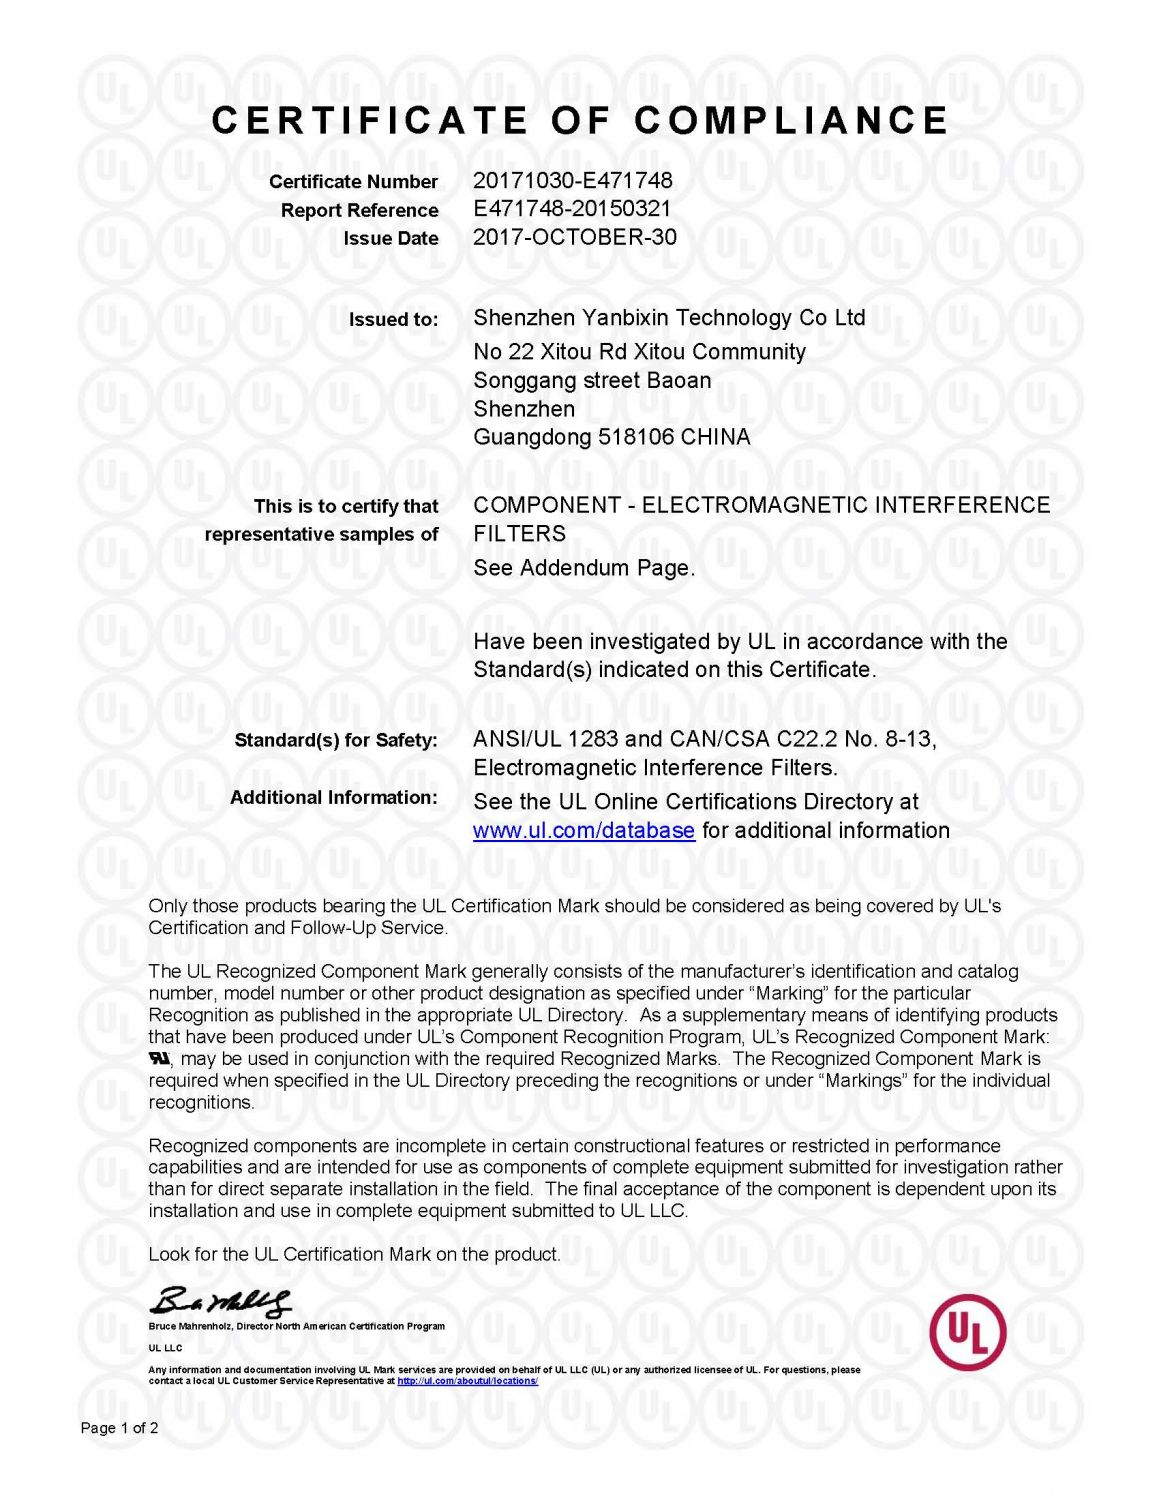 Product cUL certificate